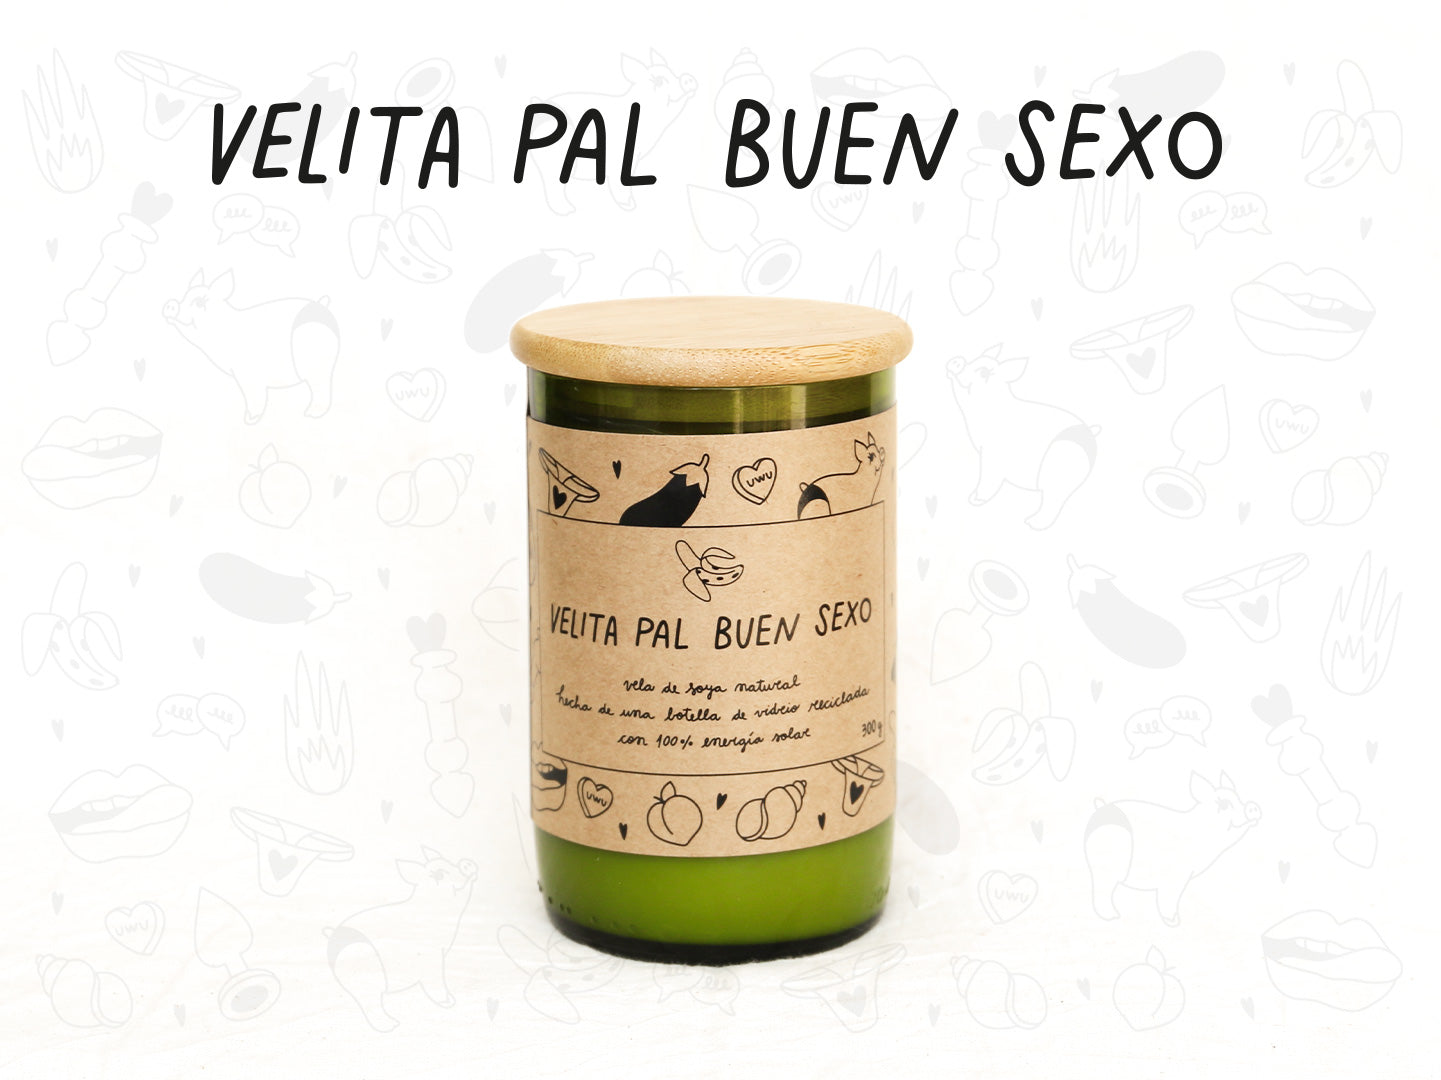 Velita Pal Buen Sexo - Aroma Vainilla - Verde